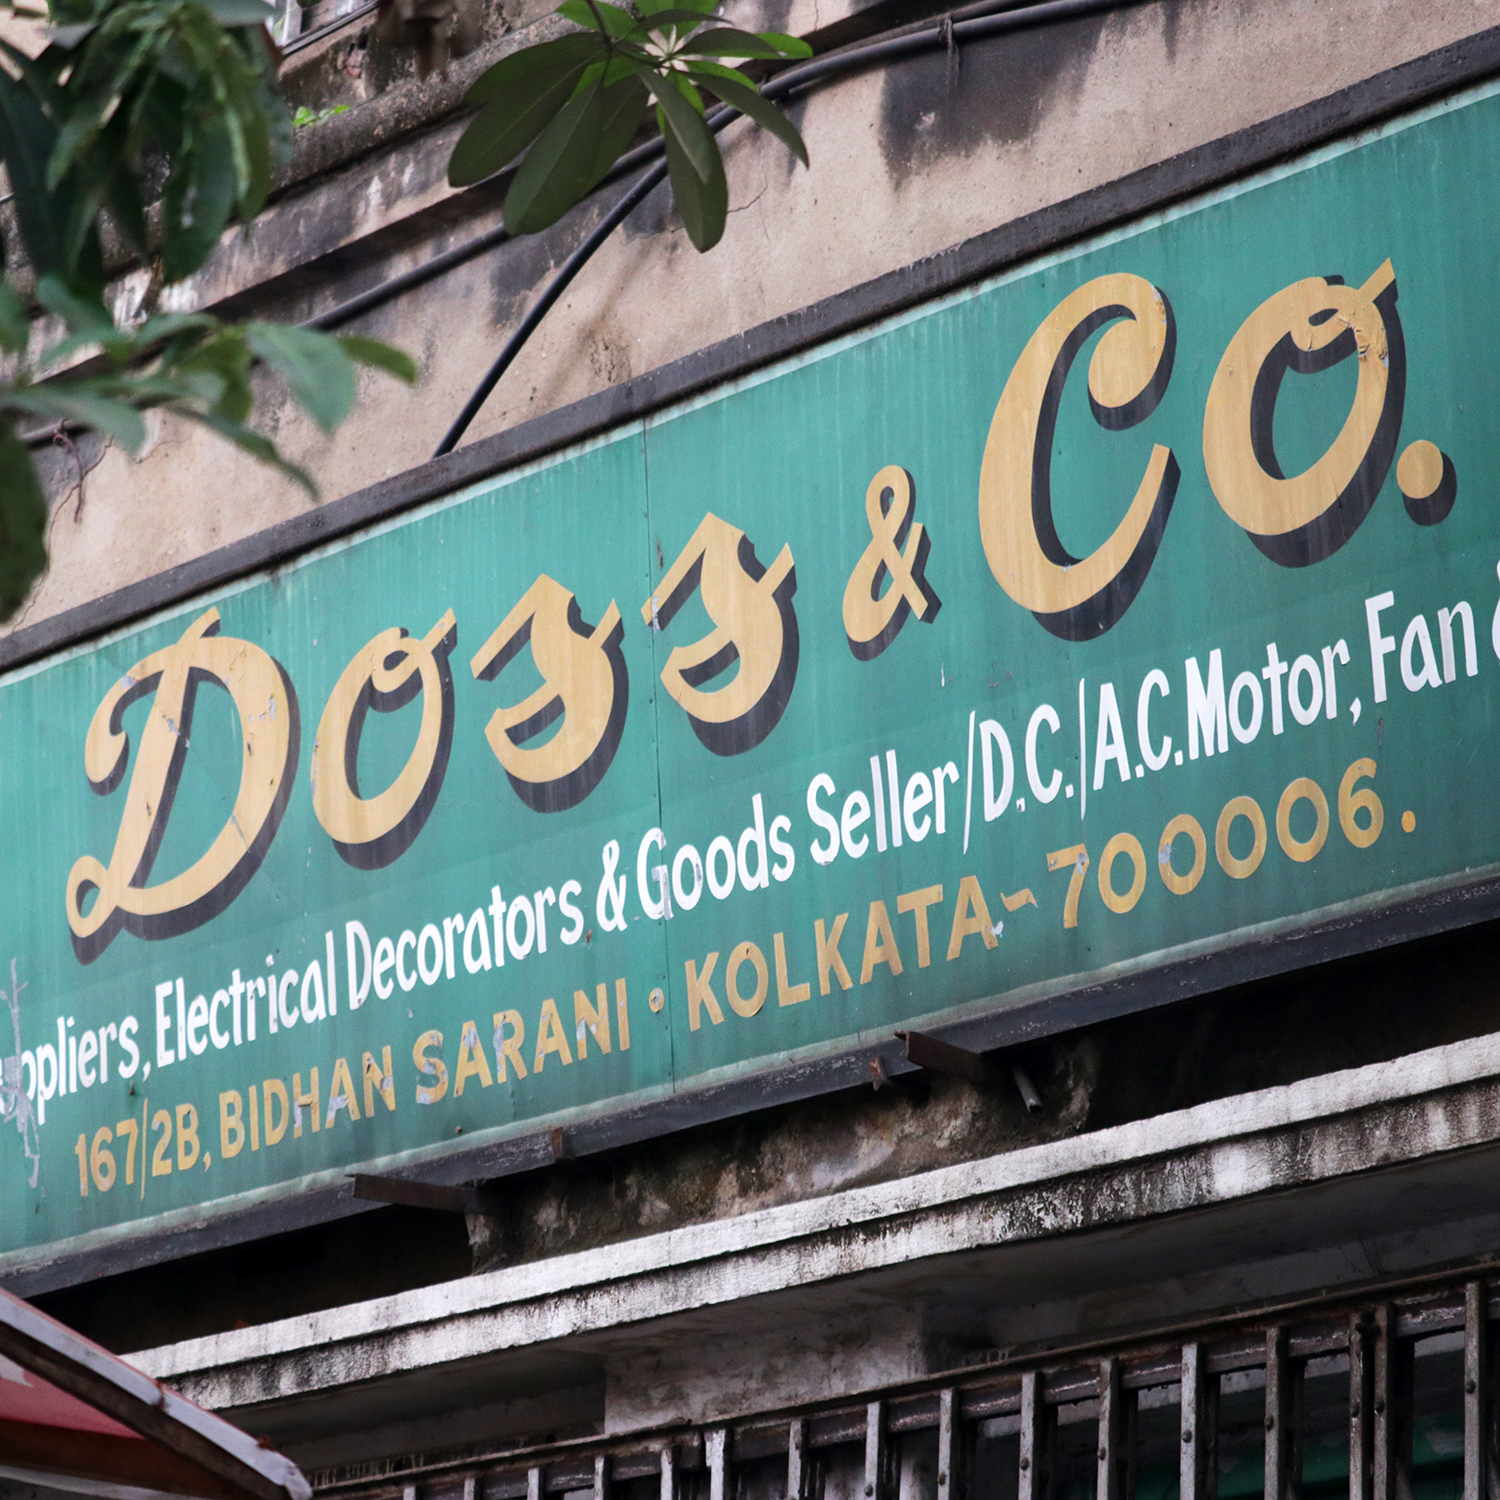 Doss & Co.